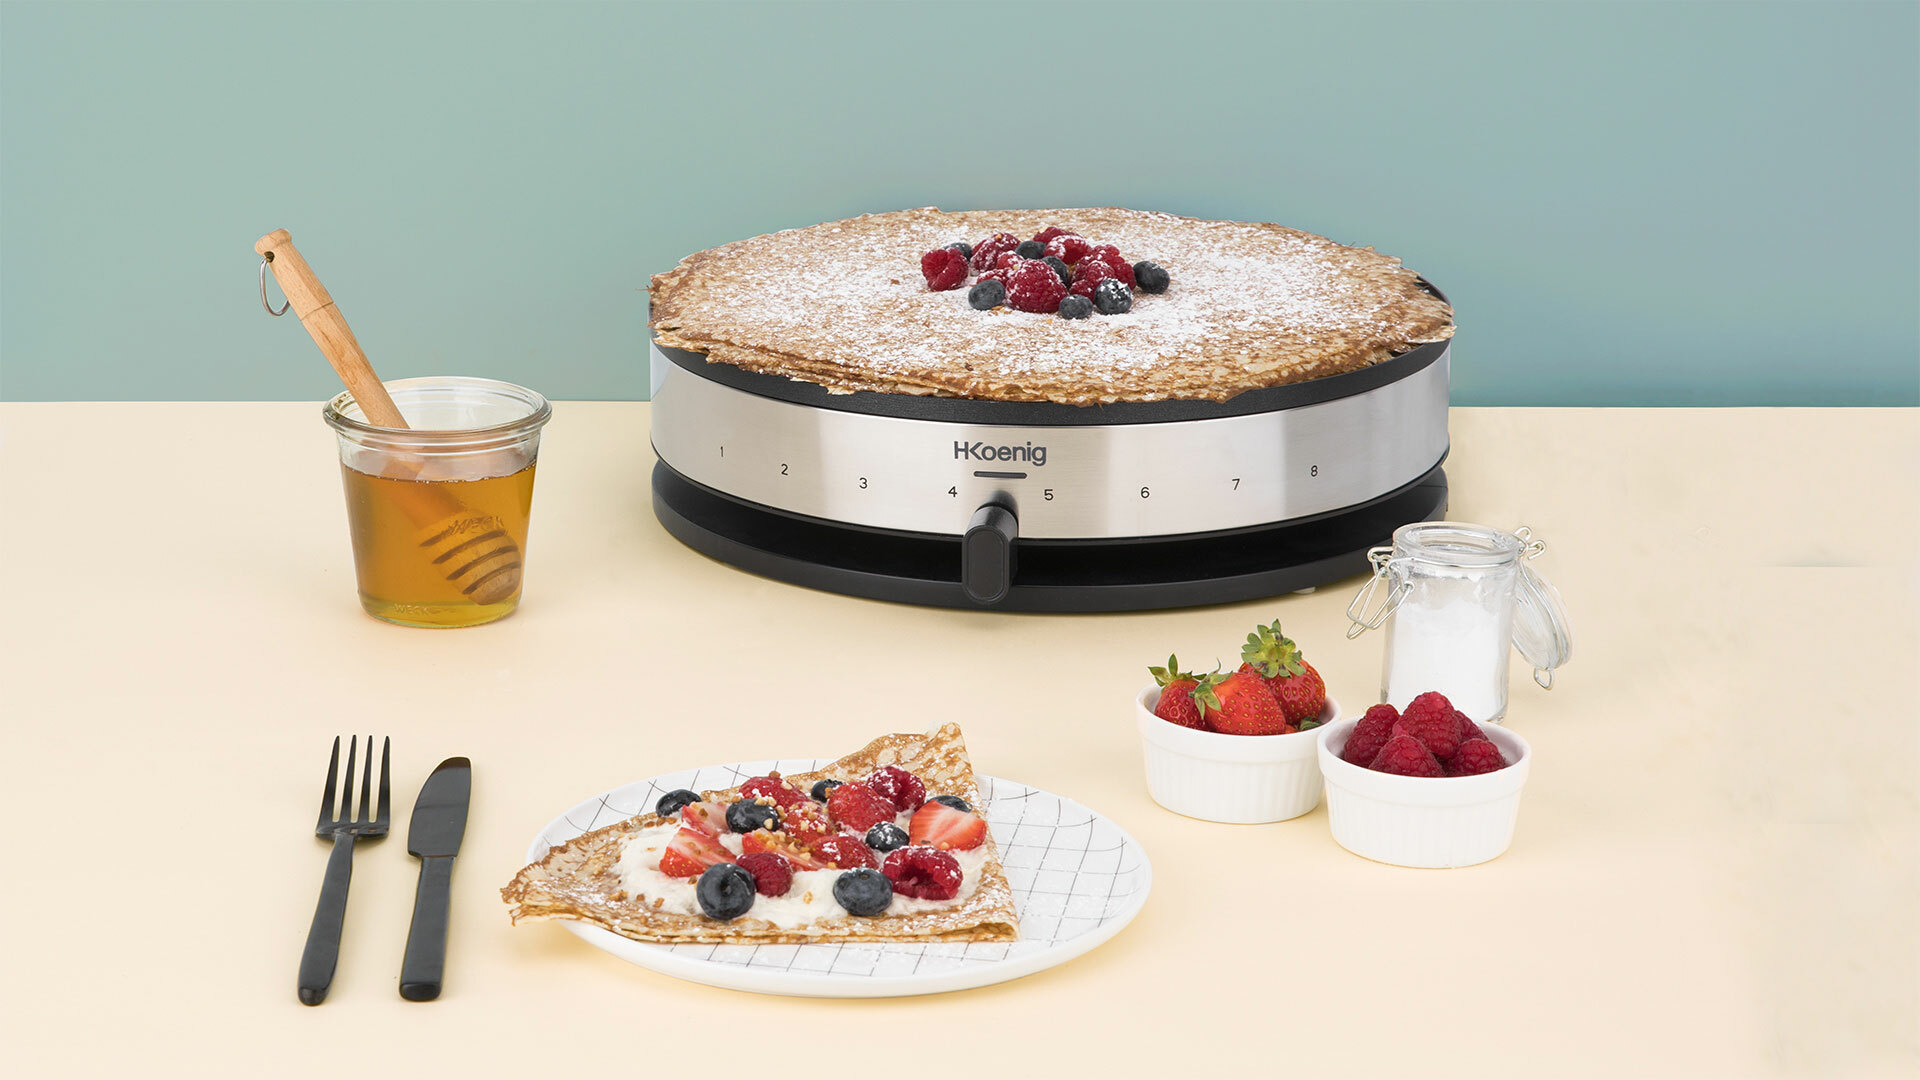 cucina conviviale > crepiere e piastre per waffle : Koenig - IT